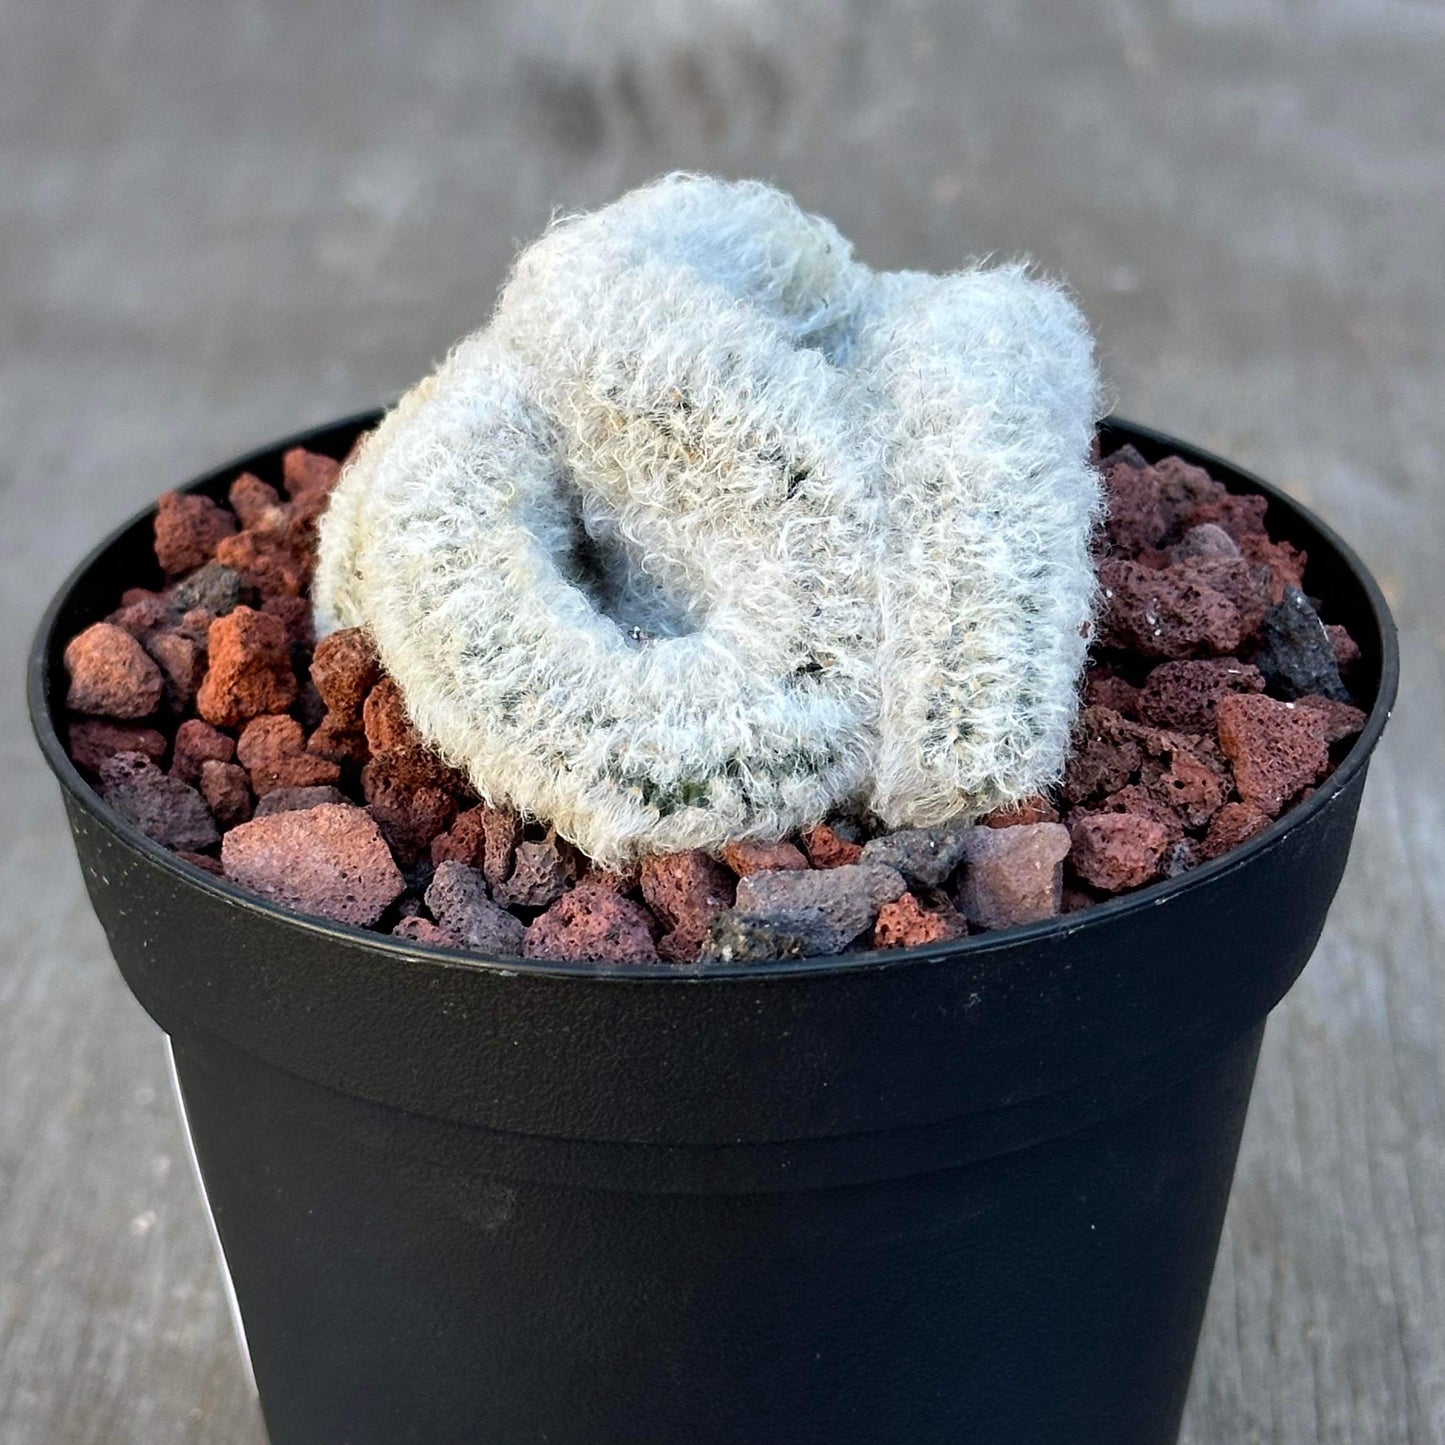 Mammilaria Albicoma “Fuzzy Brain” Cactus